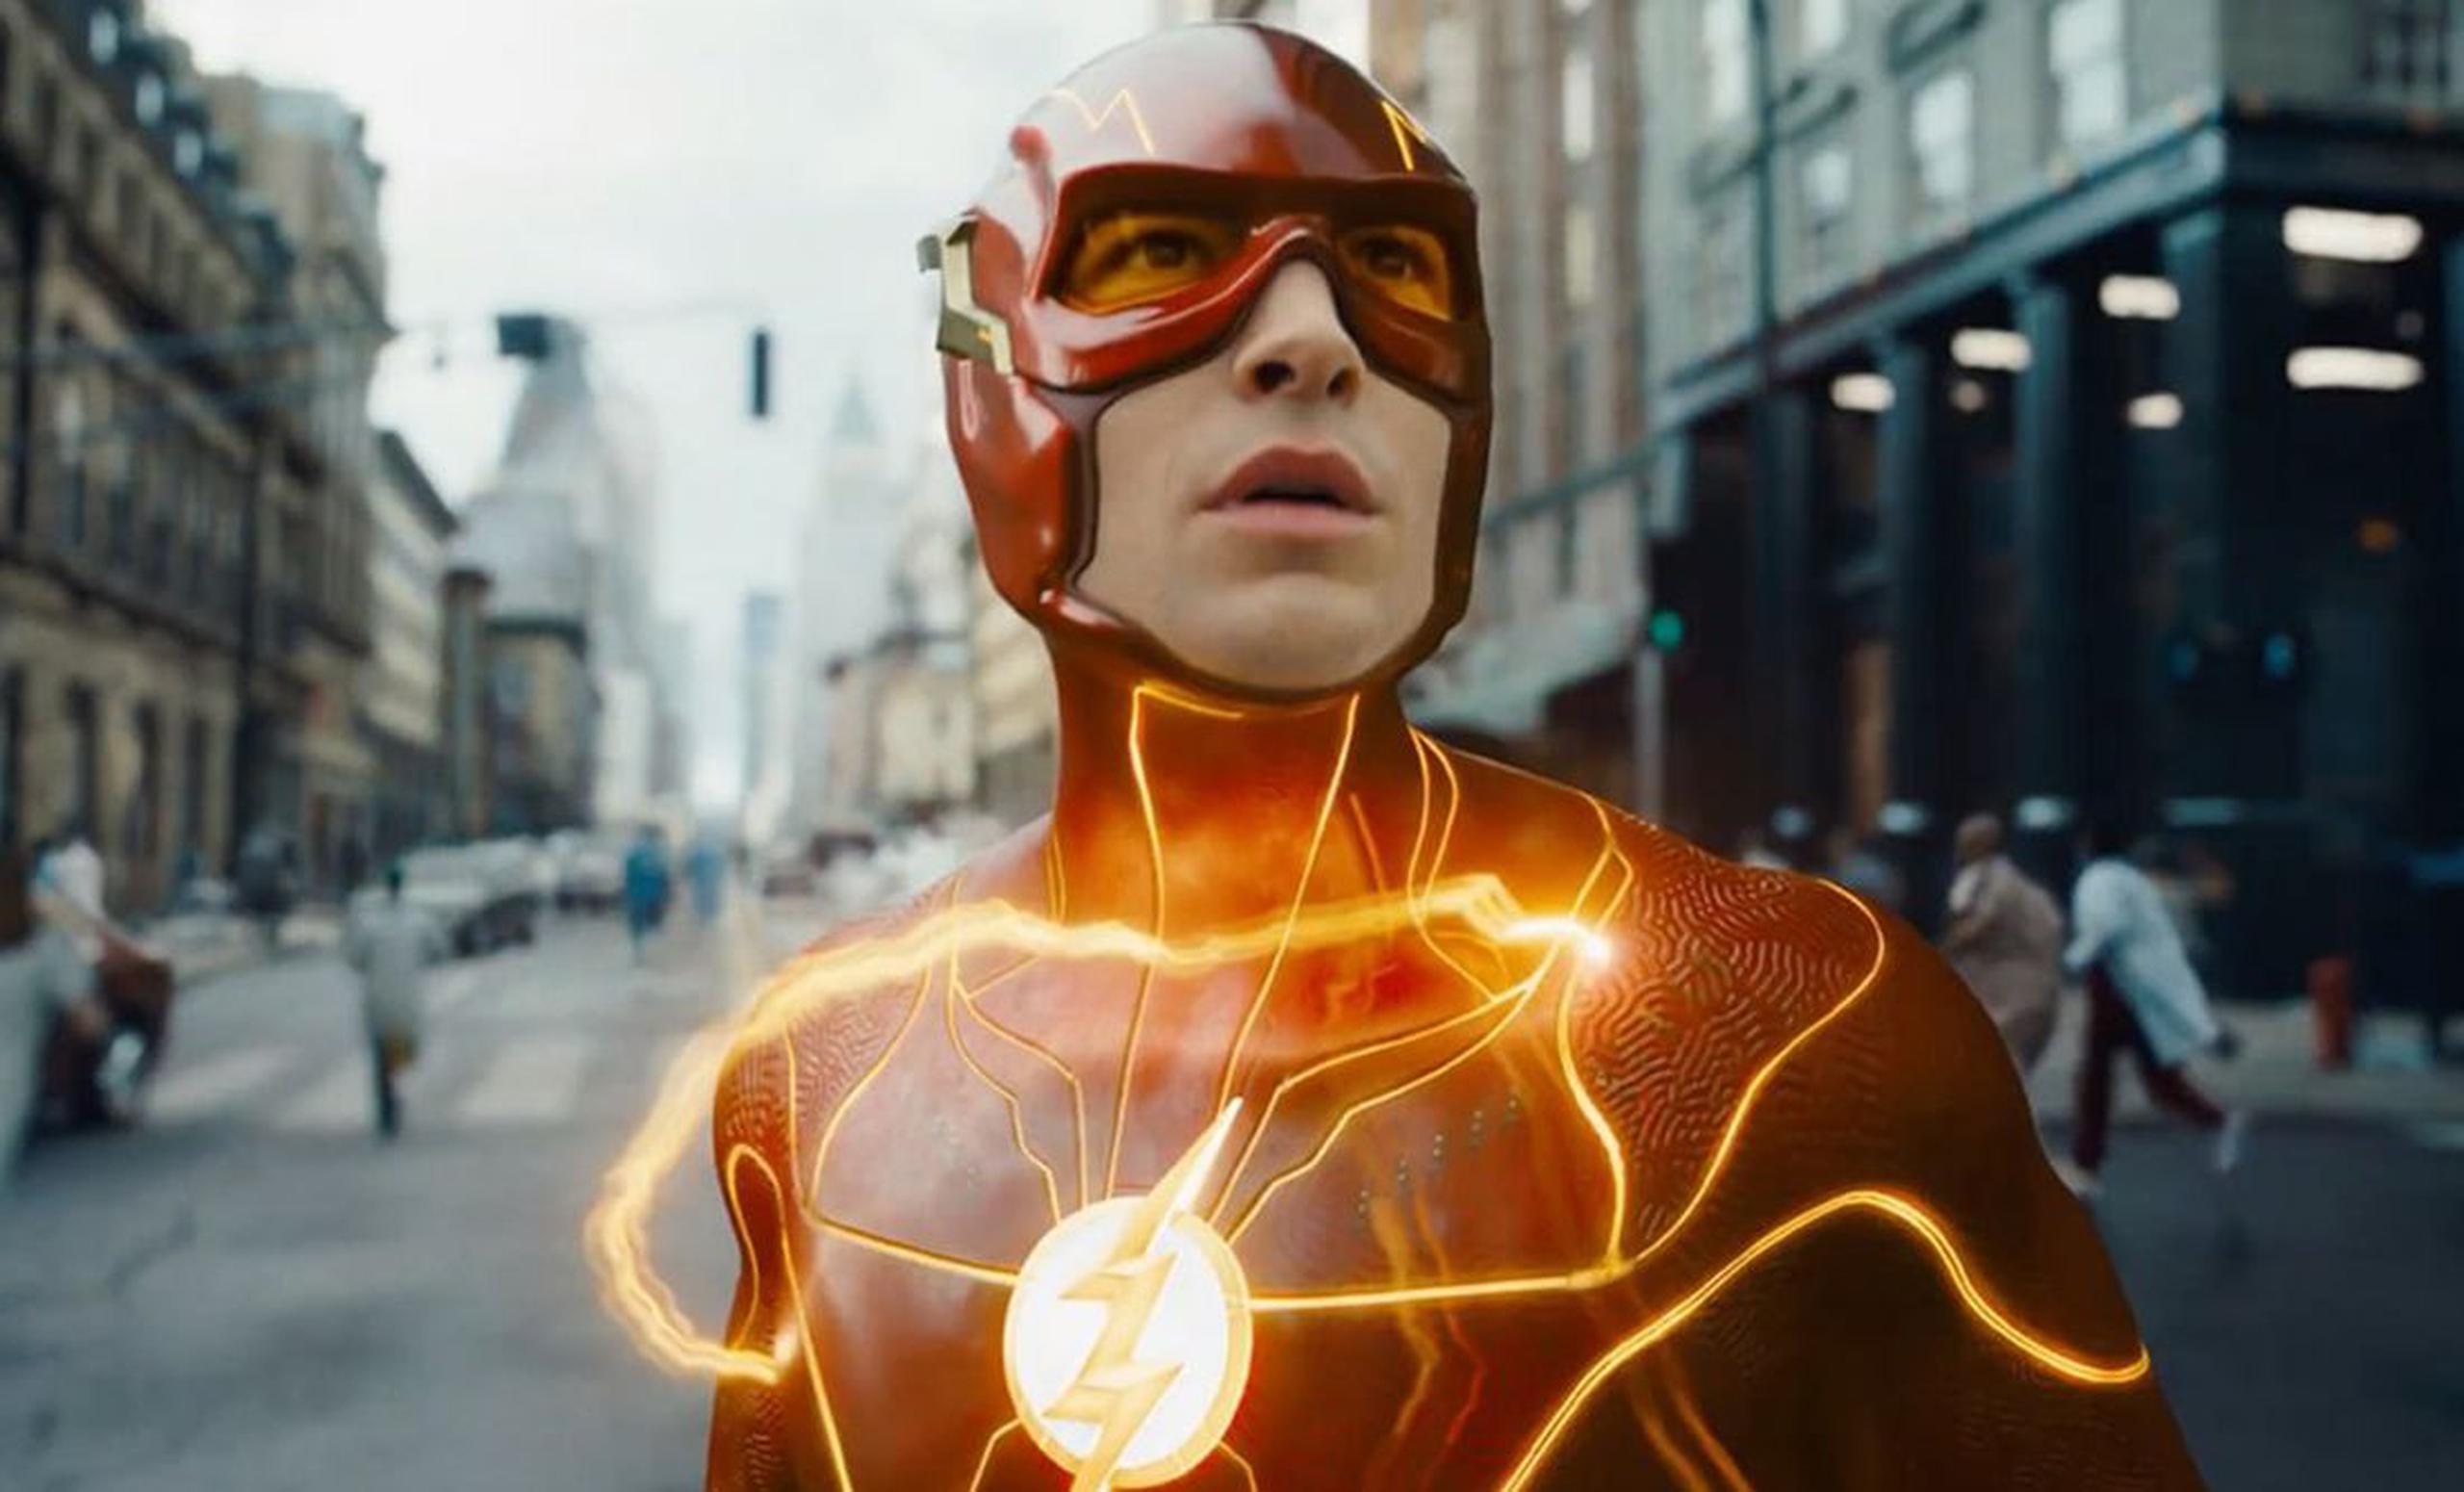 VIDEO: Llega el tráiler de “The Flash” y sorprende el Batman de Michael  Keaton - Primera Hora